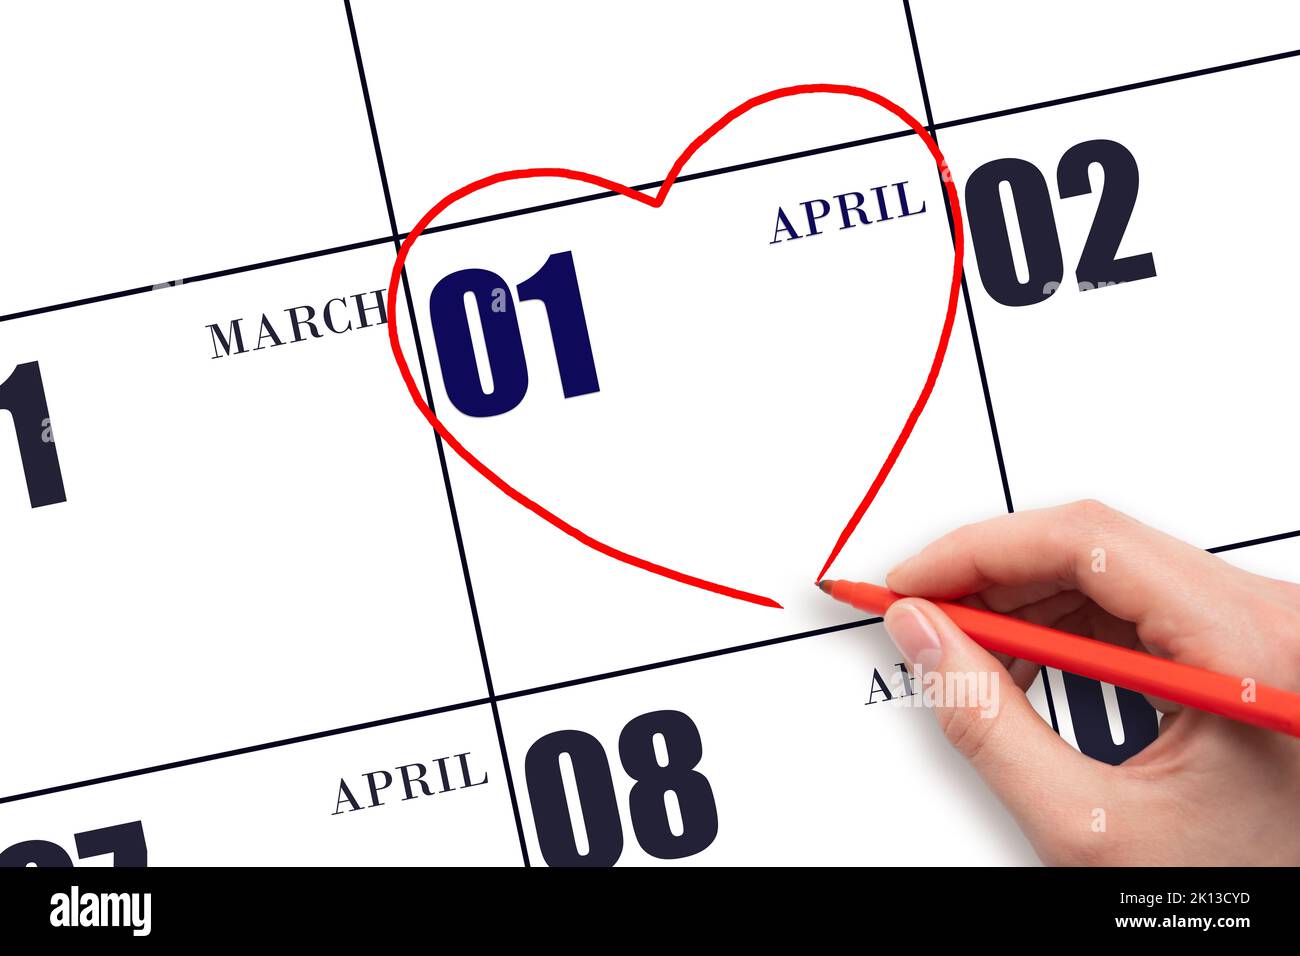 1. Tage im April. Eine Frauenhand, die am Kalenderdatum April 1 eine rote Herzform zeichnet. Herz als Symbol der Liebe. Frühlingsmonat. Tag des Jahres c Stockfoto